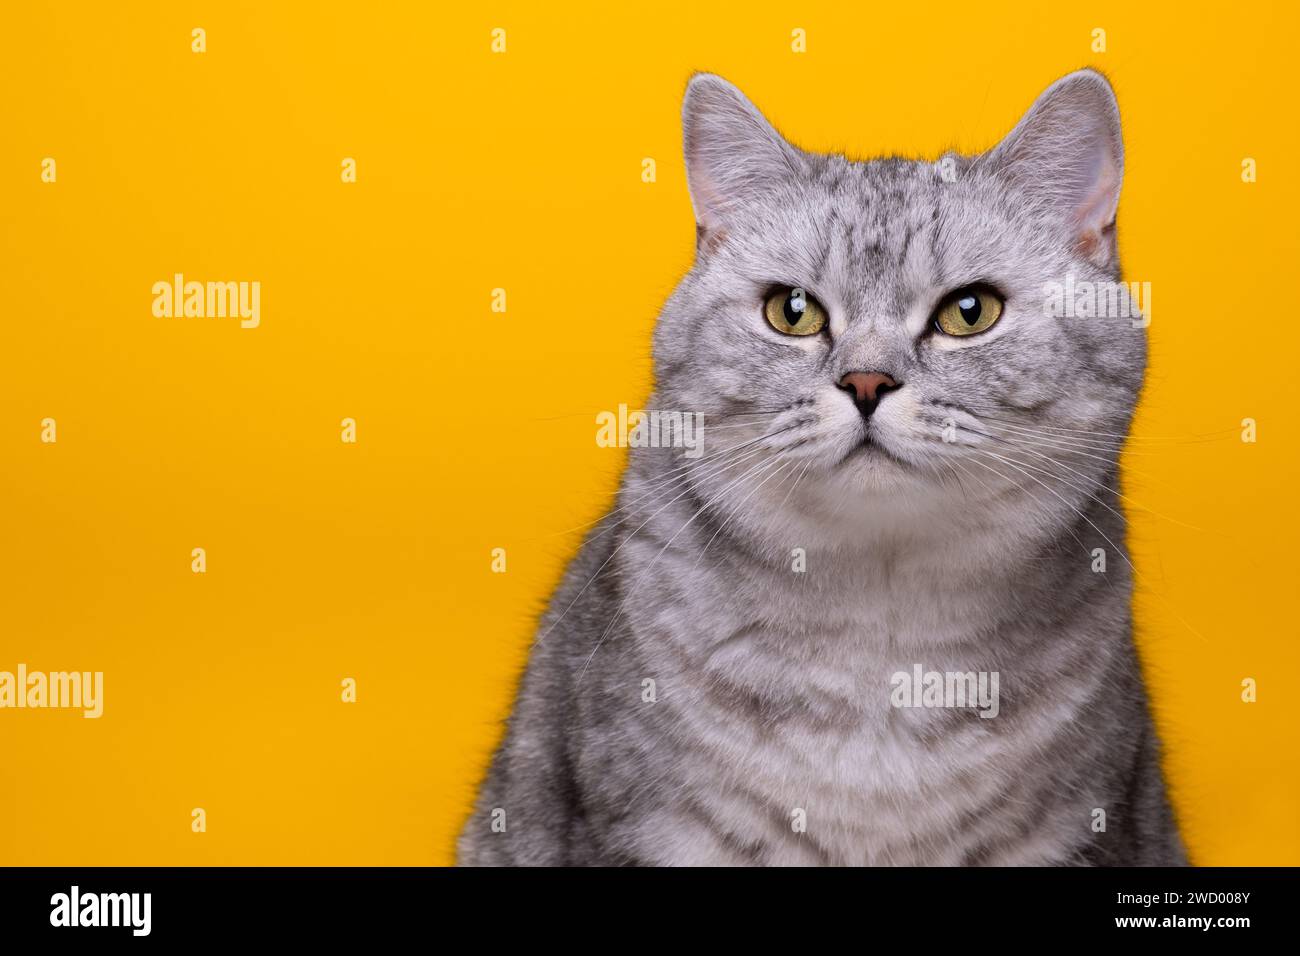 Tabby British Shorthair cat Stock Photo